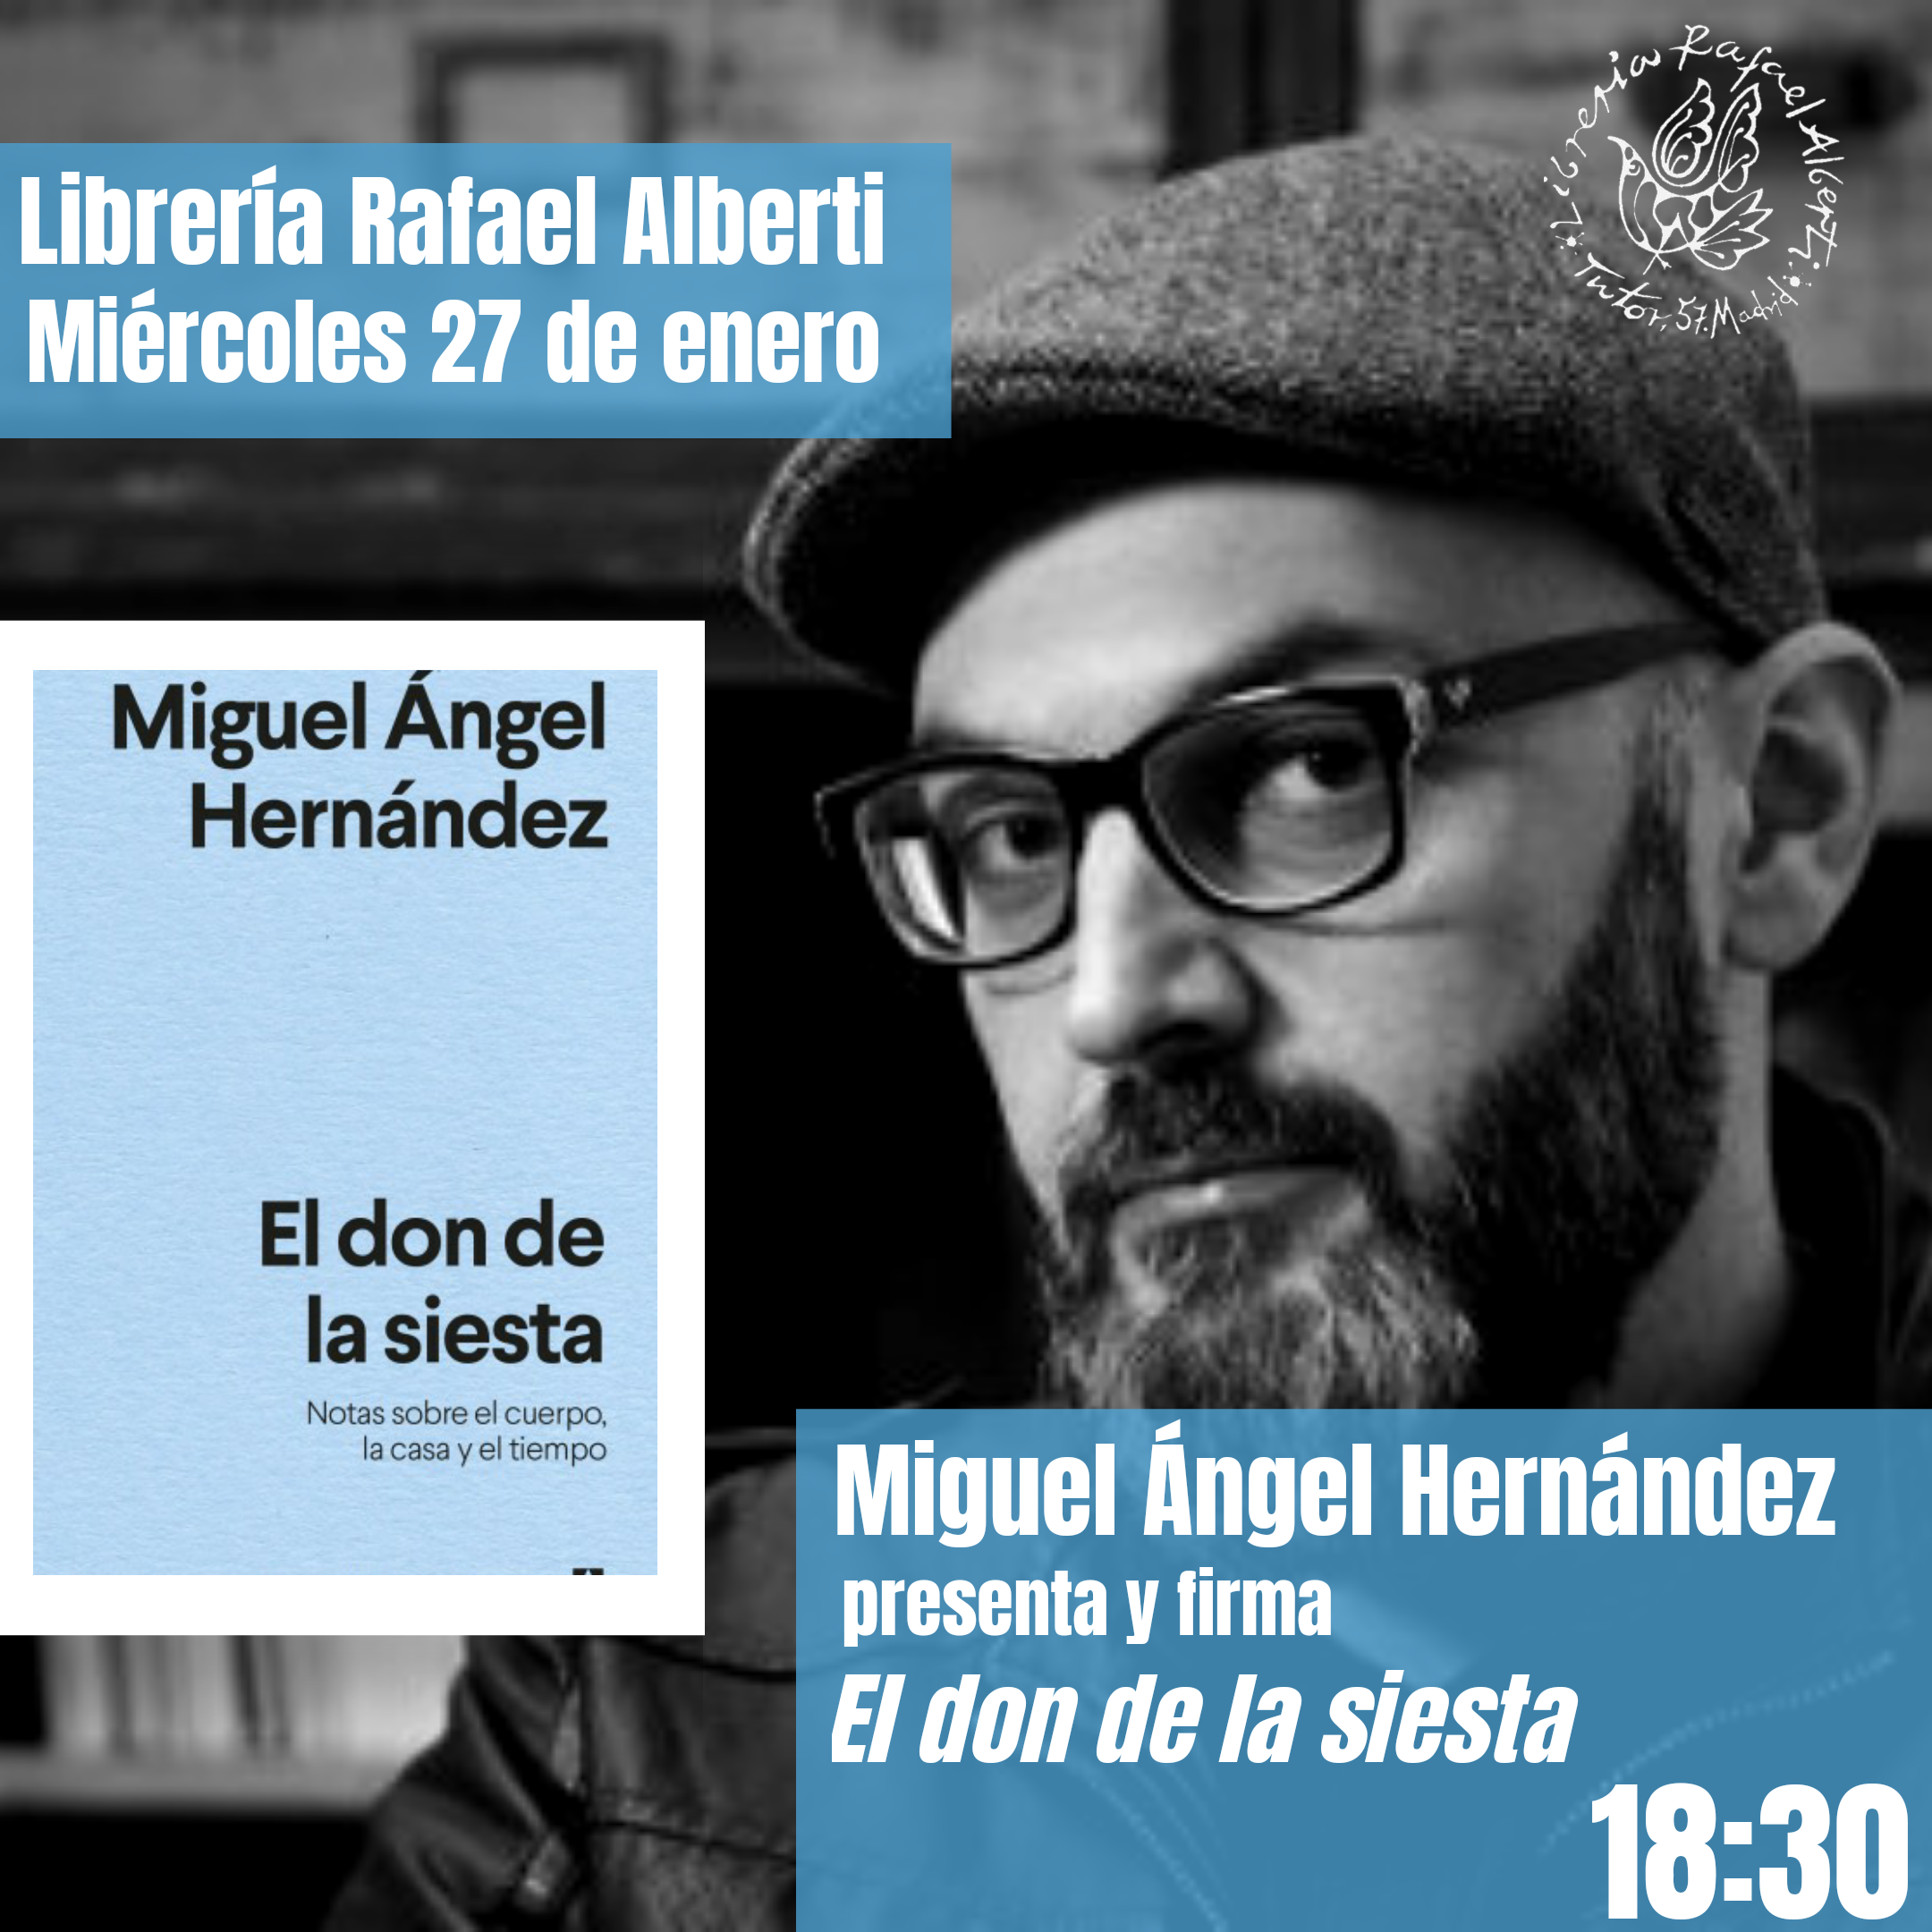 MIGUEL ÁNGEL HERNÁNDEZ presenta y firma 'El don de la siesta' (Anagrama)